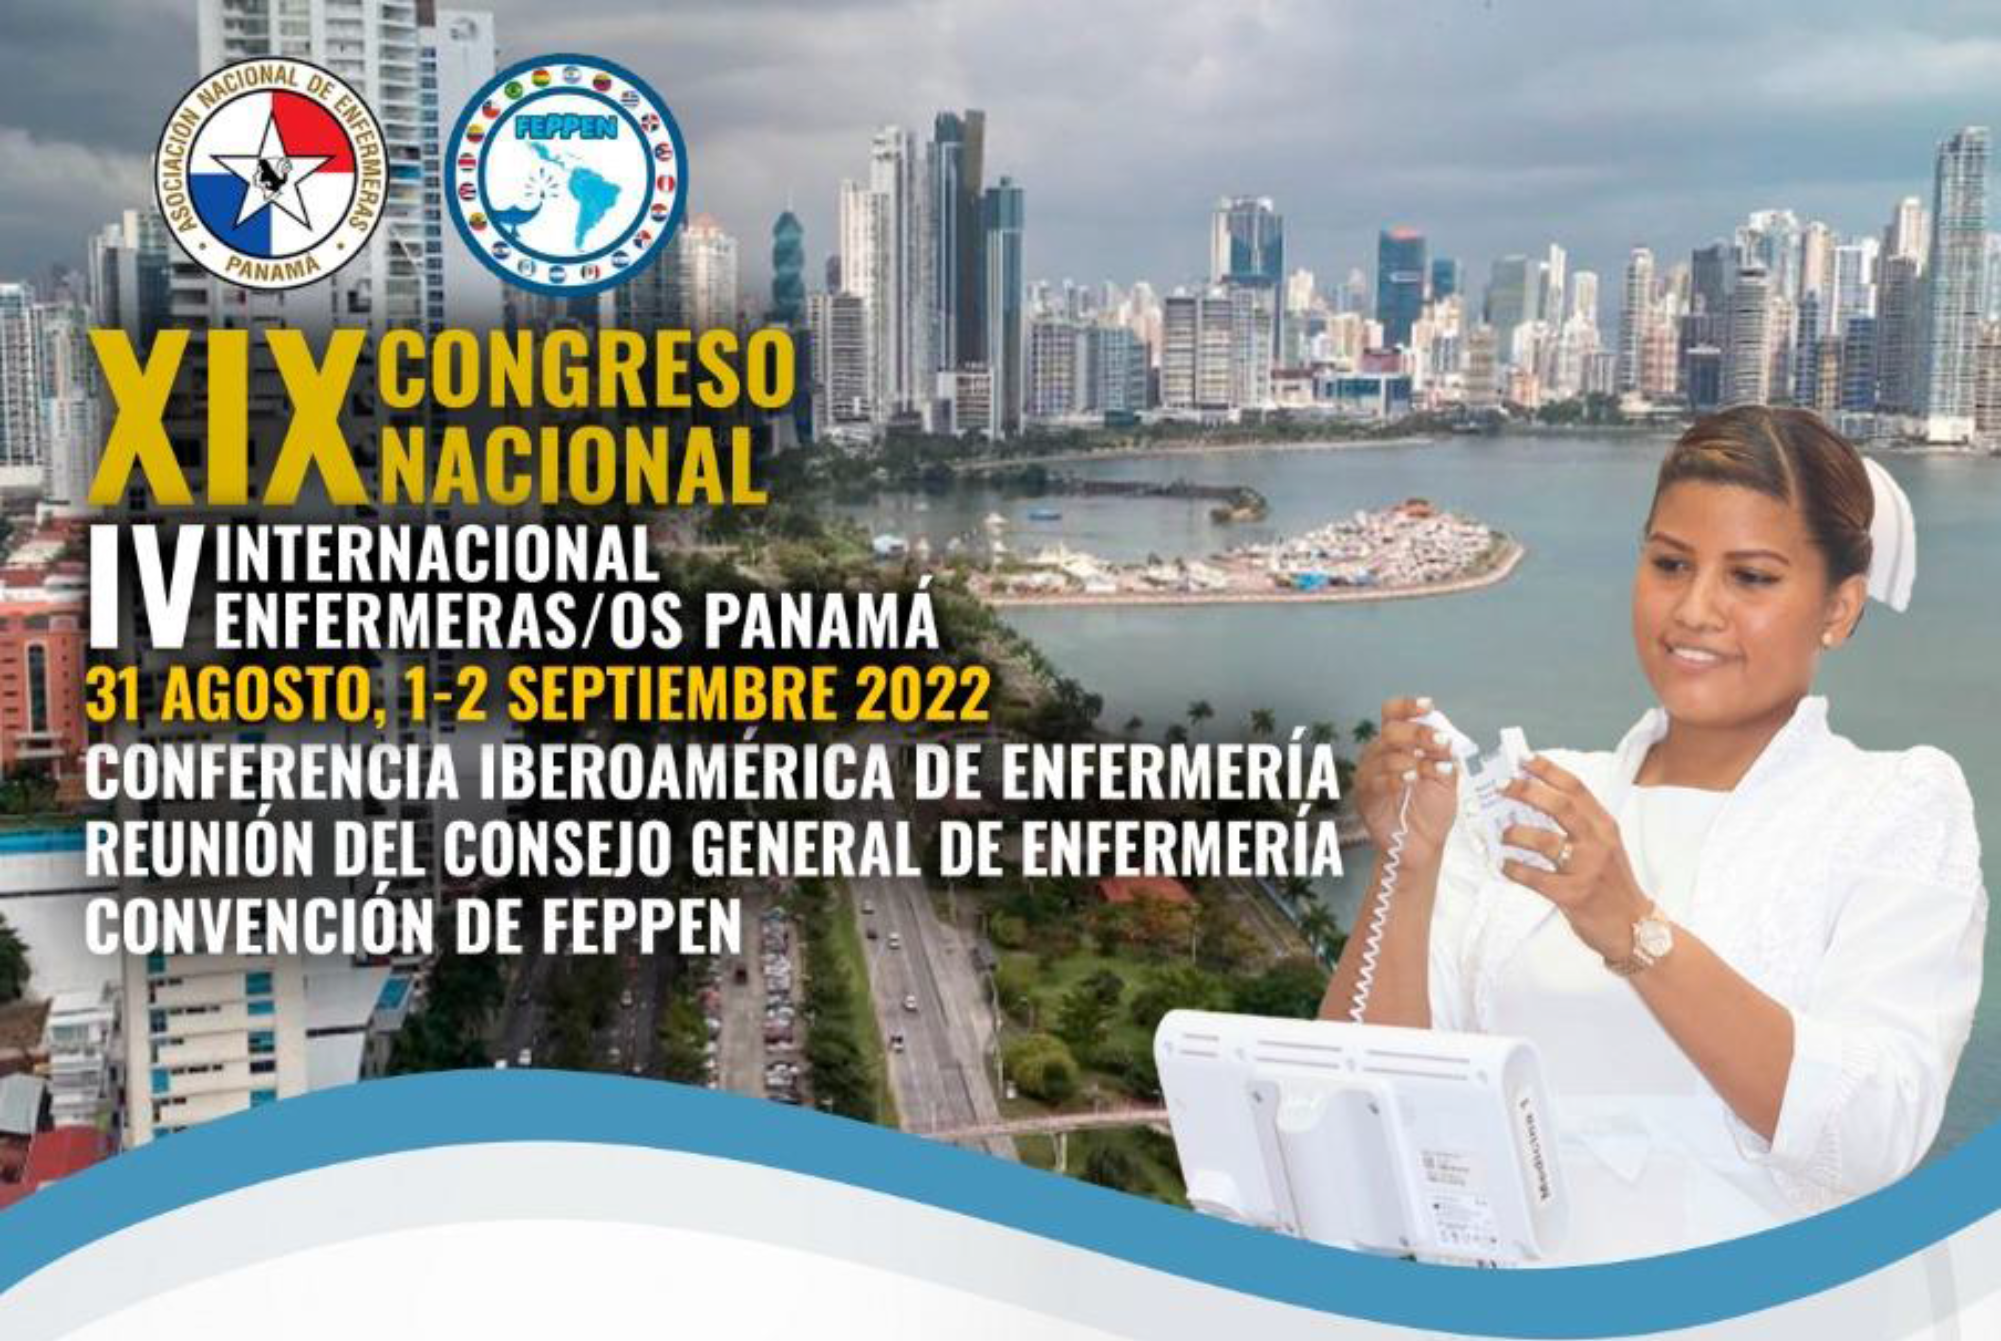 XIX Congreso Nacional y IV Congreso Internacional de Enfermeras de Panamá